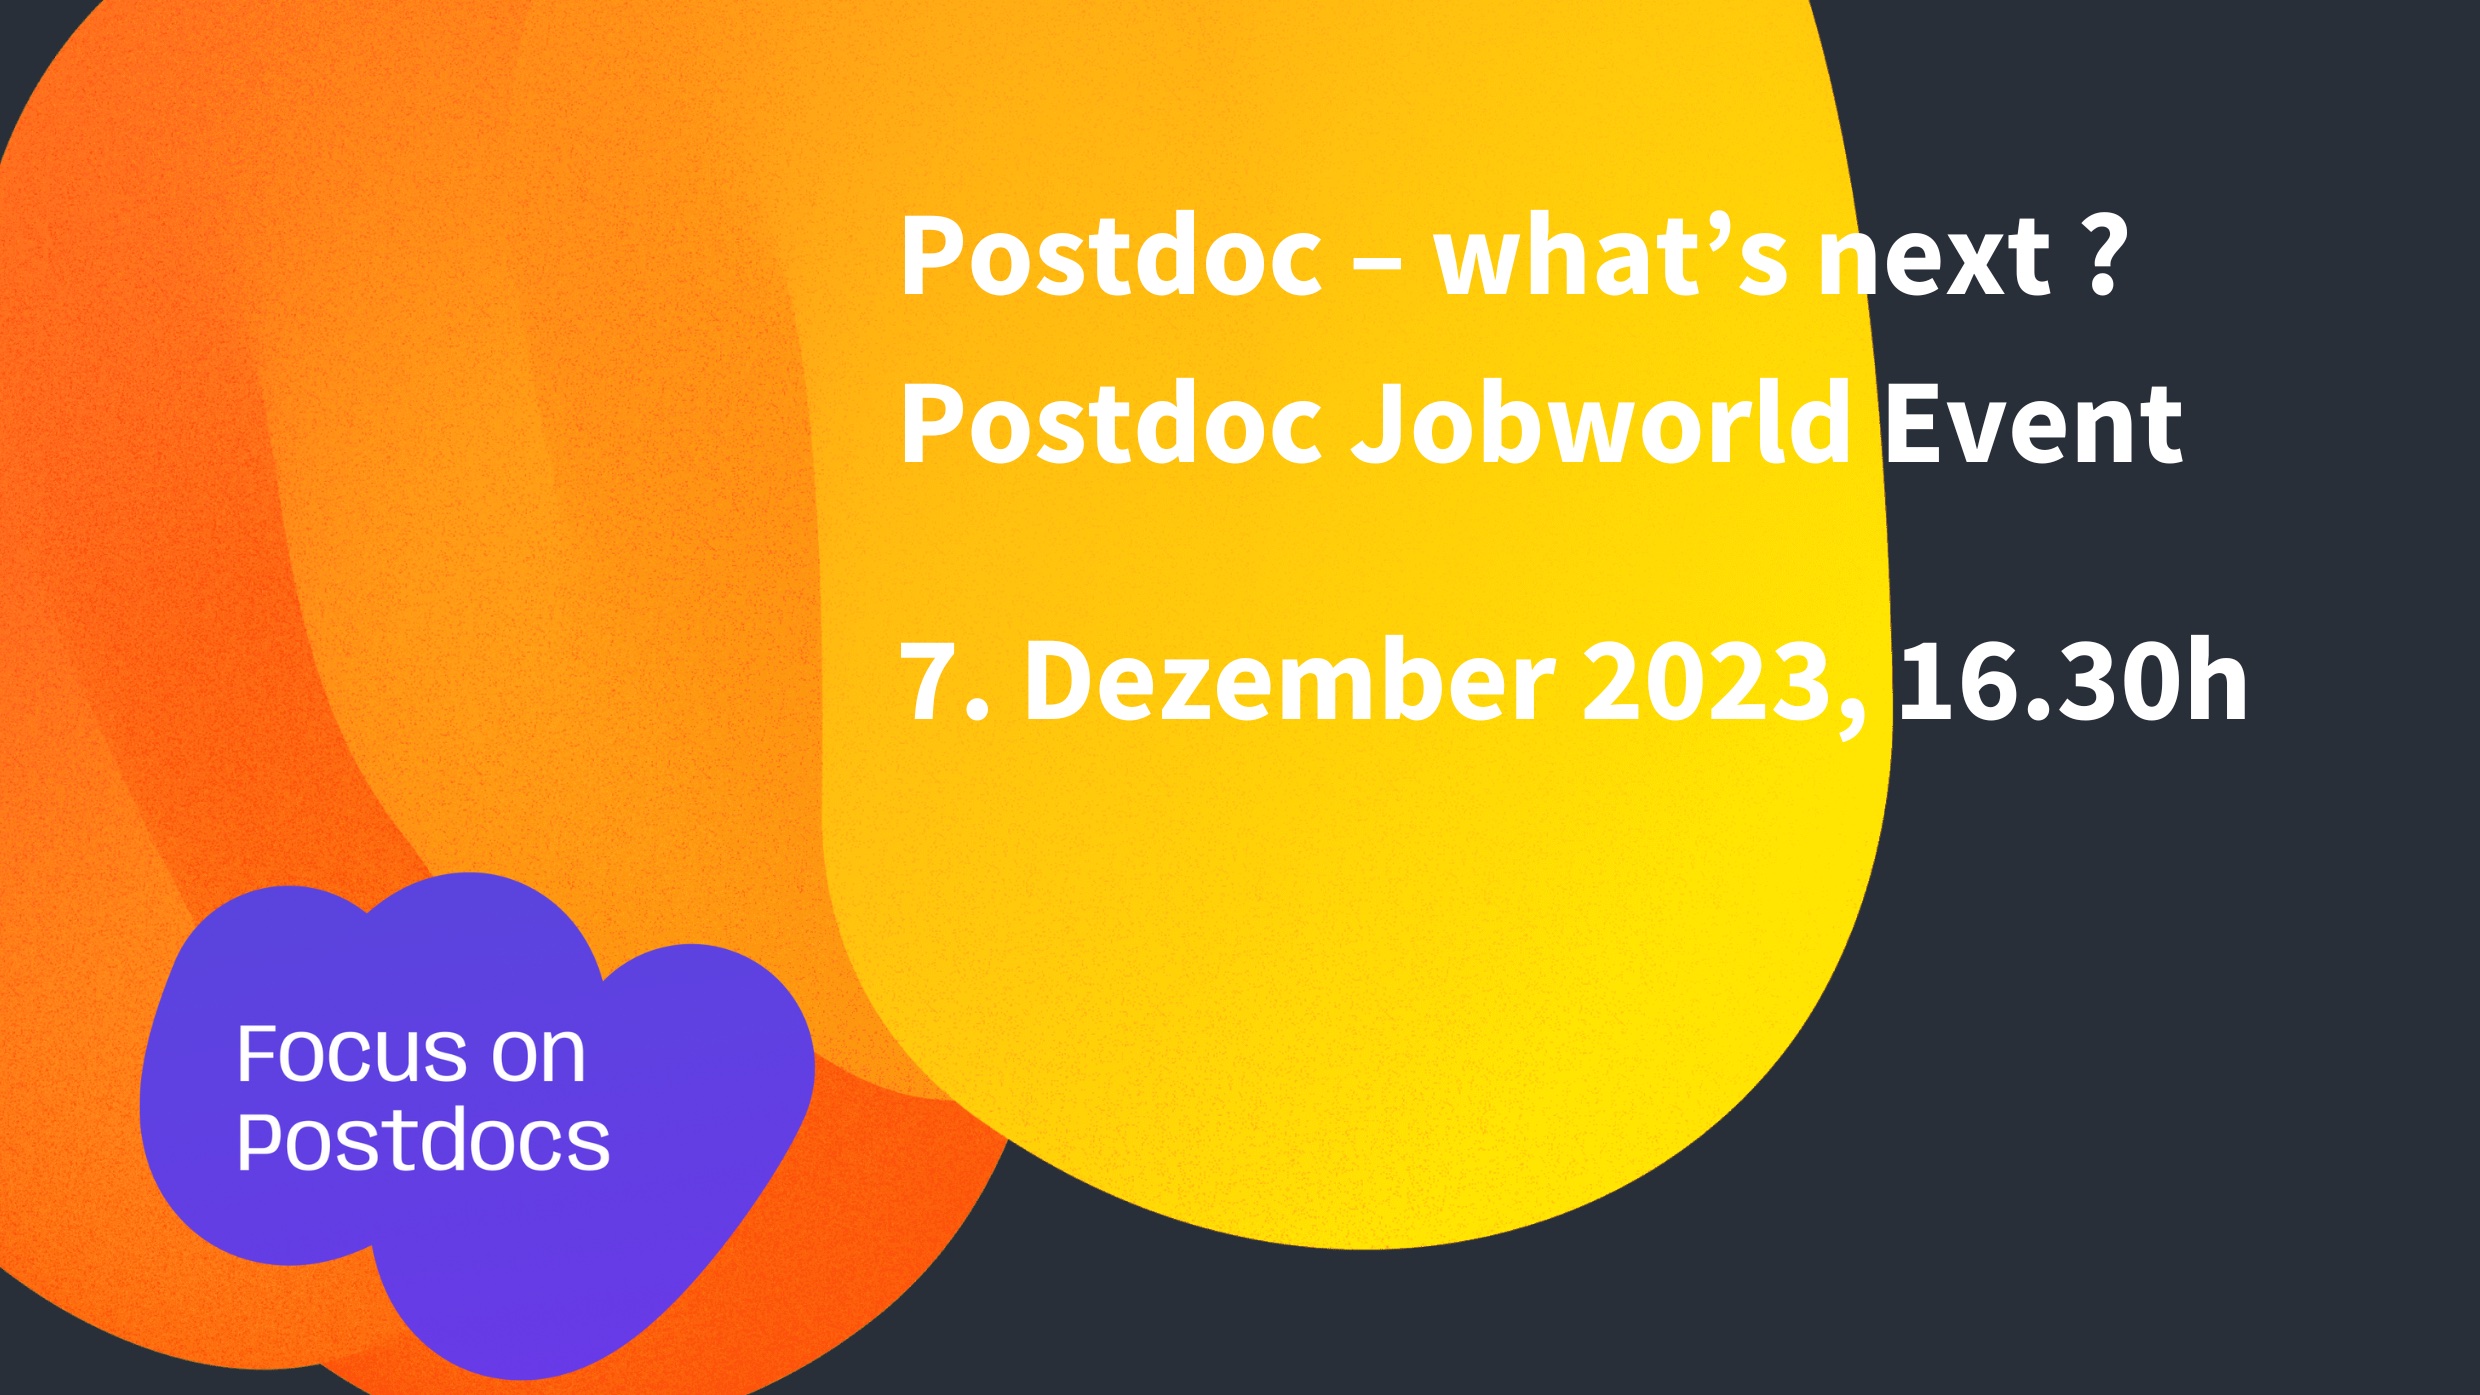 Postdoc Jobworld